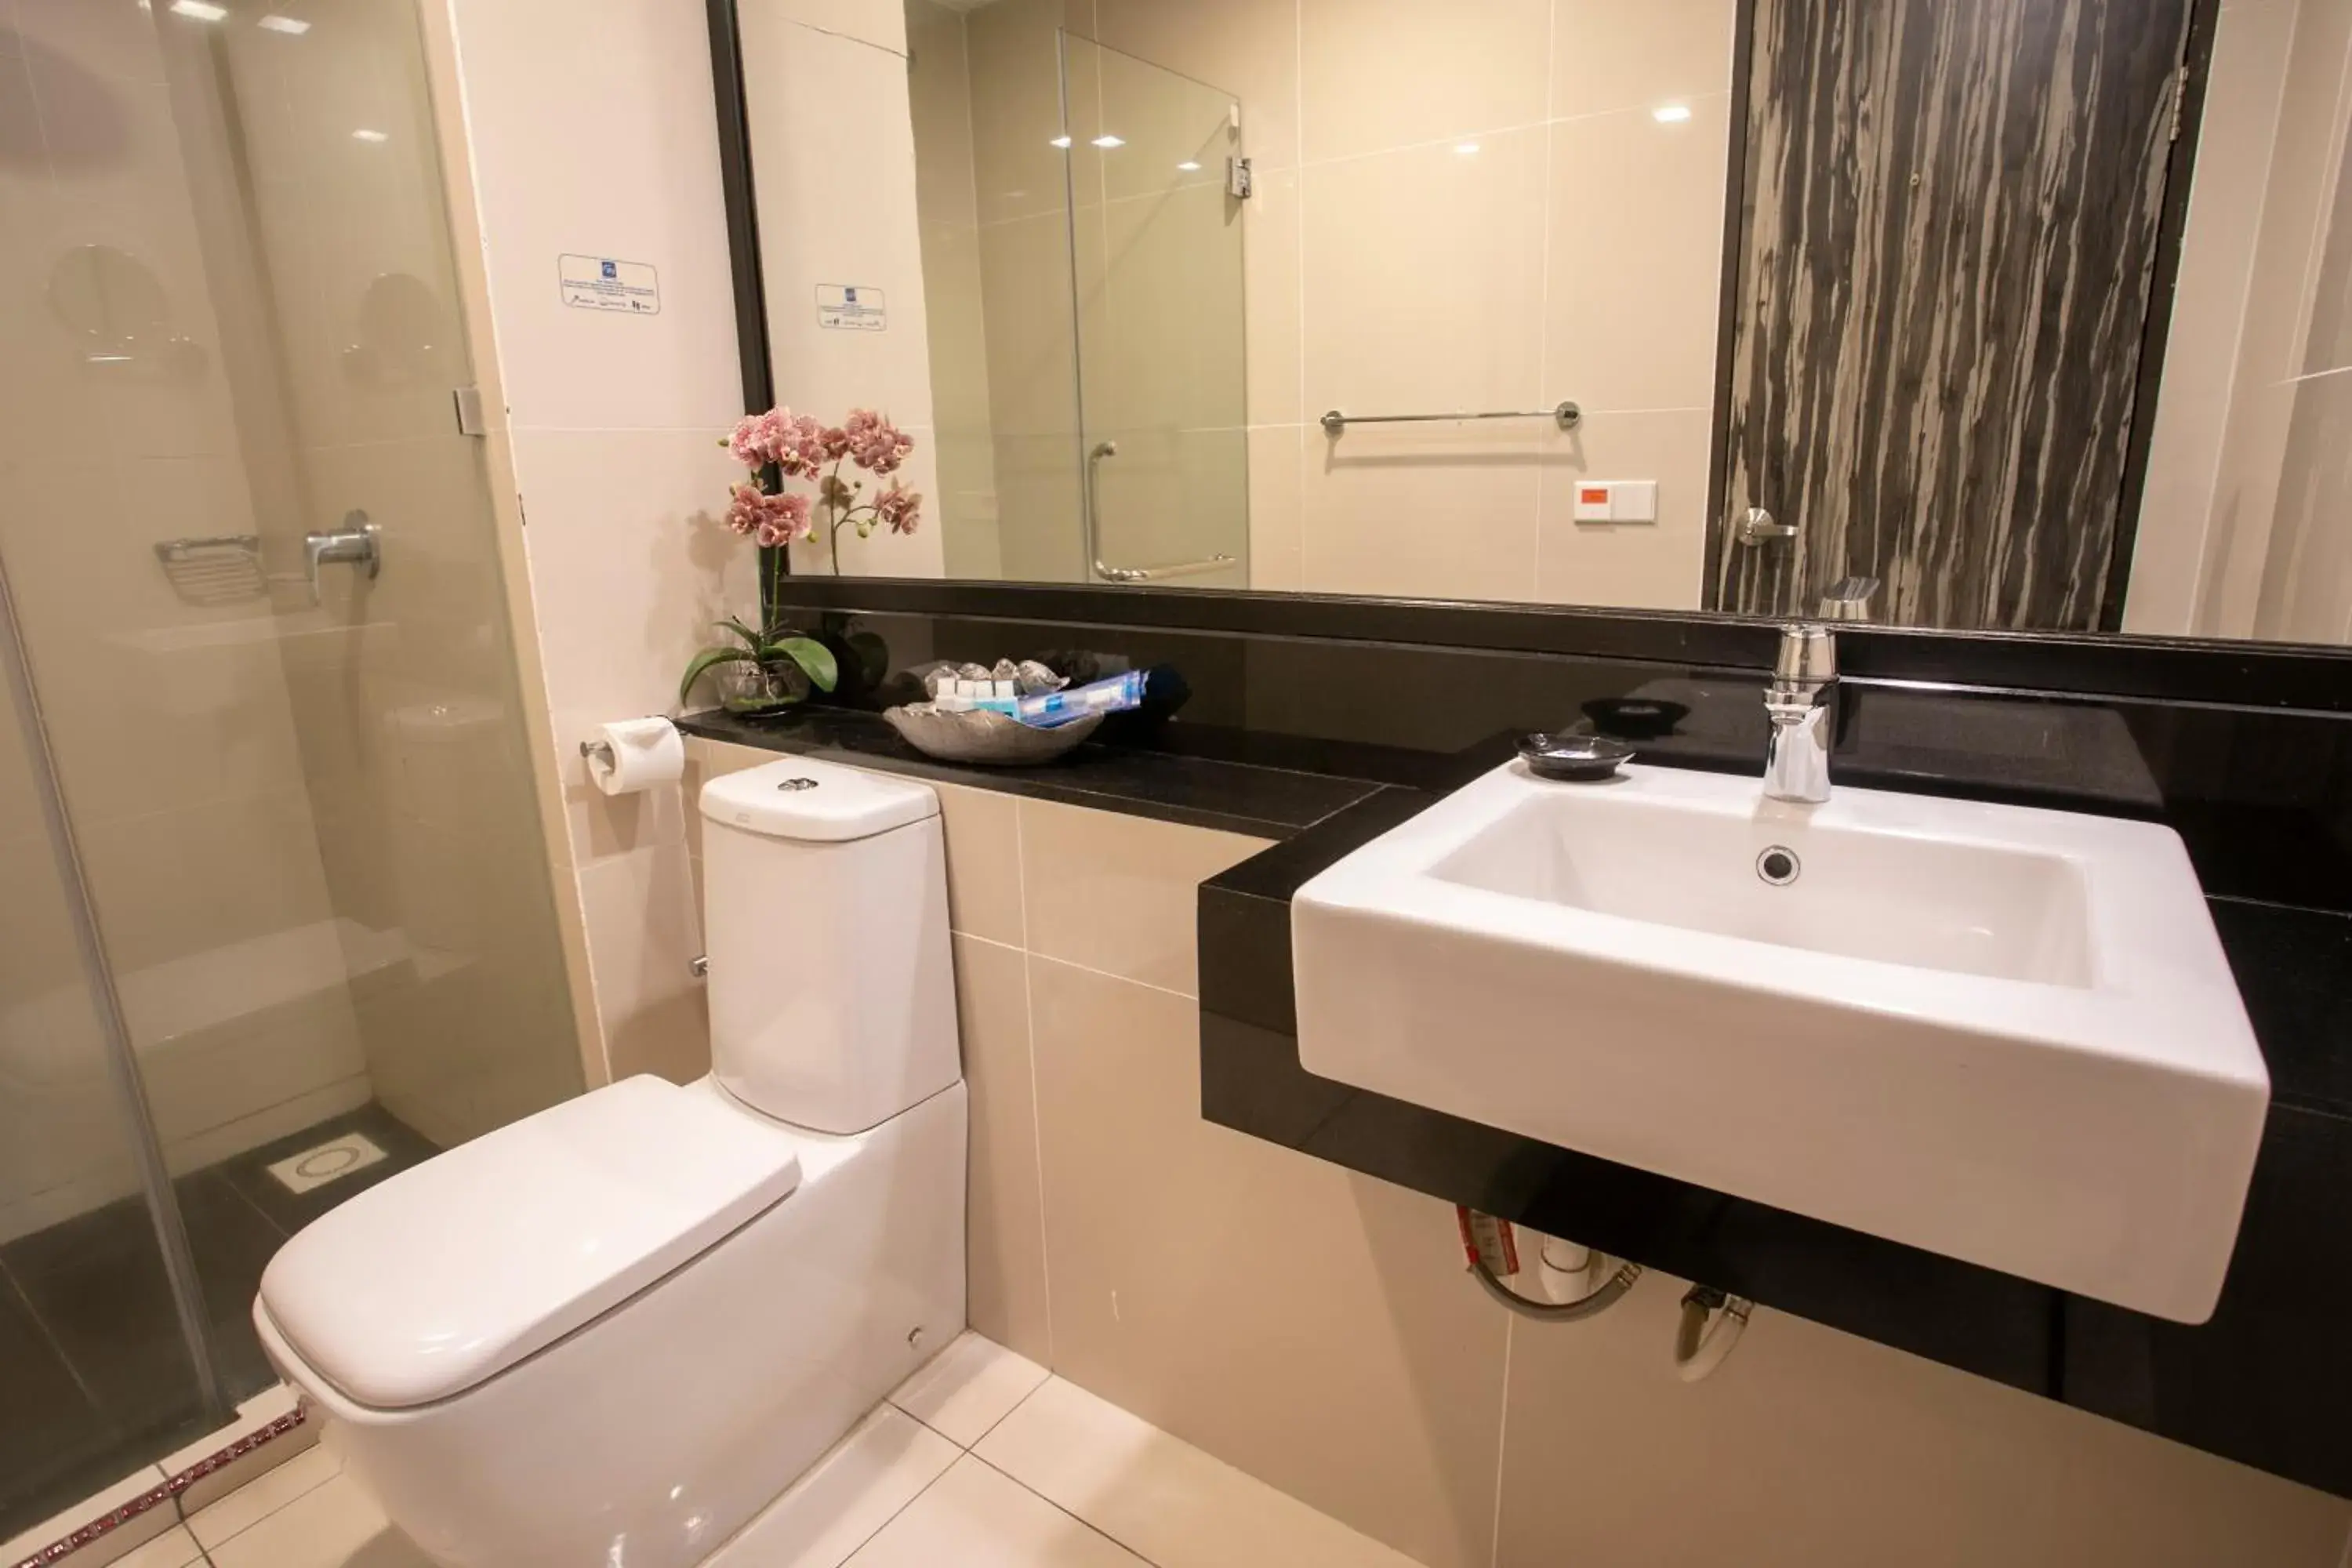 Bathroom in Sky Hotel Kota Kinabalu